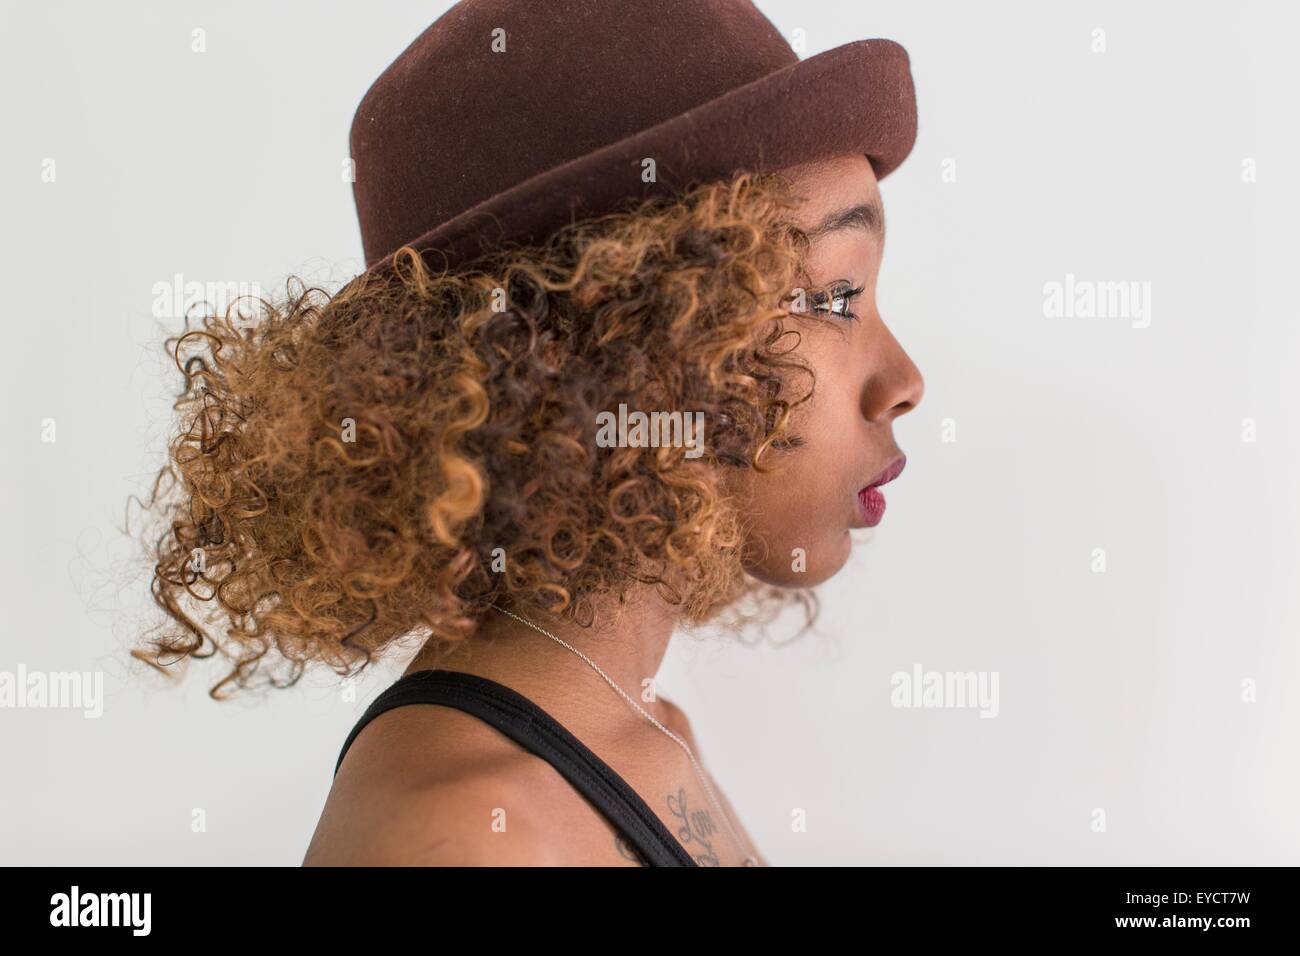 Profil de Studio portrait of young woman wearing hat feutre Banque D'Images